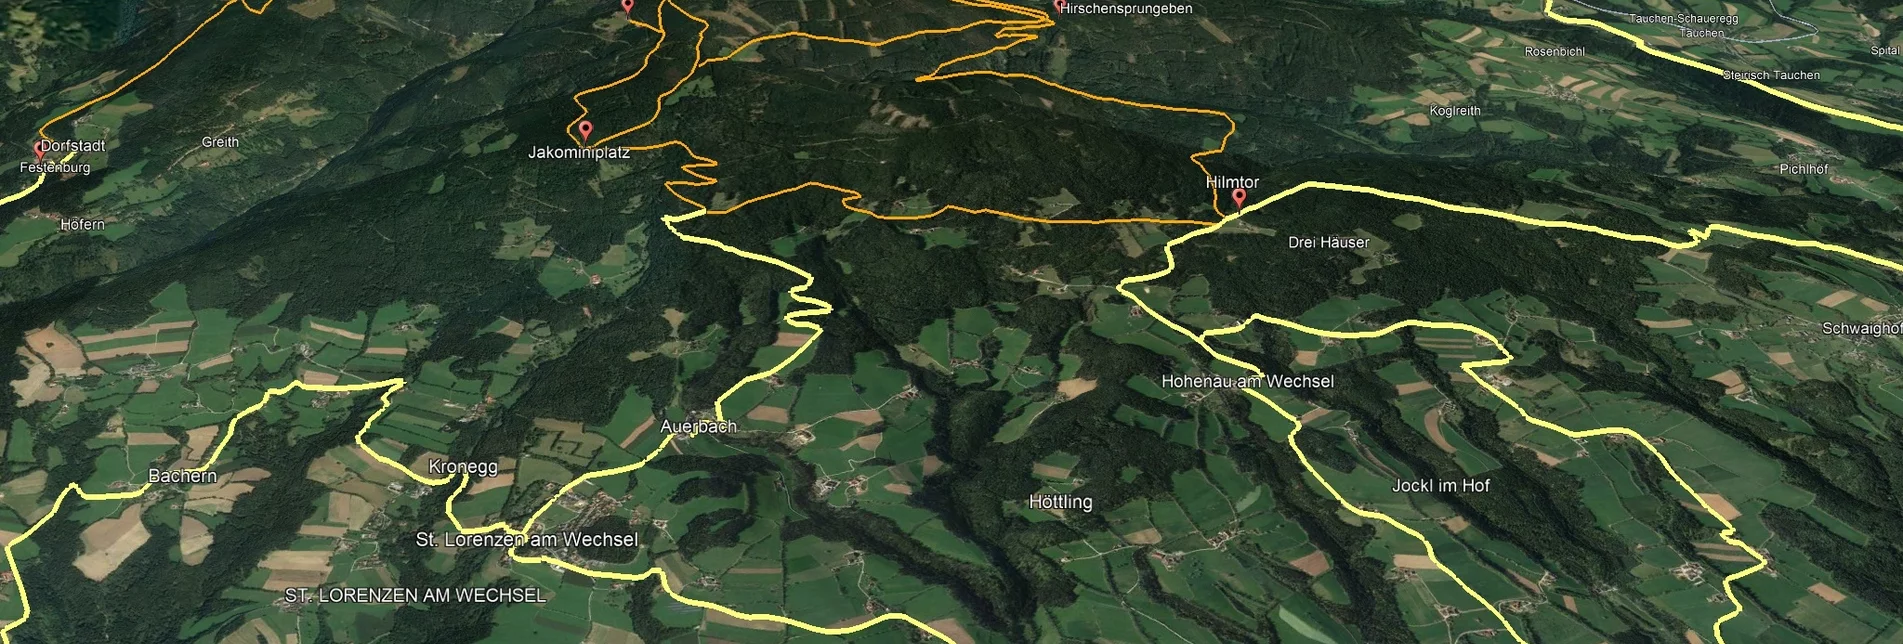 Mountainbike Steirische Wexl Trails - Glatzl Trahütten Alm Route - Touren-Impression #1 | © Verein Tourismusentwicklung Steirischer Wechsel